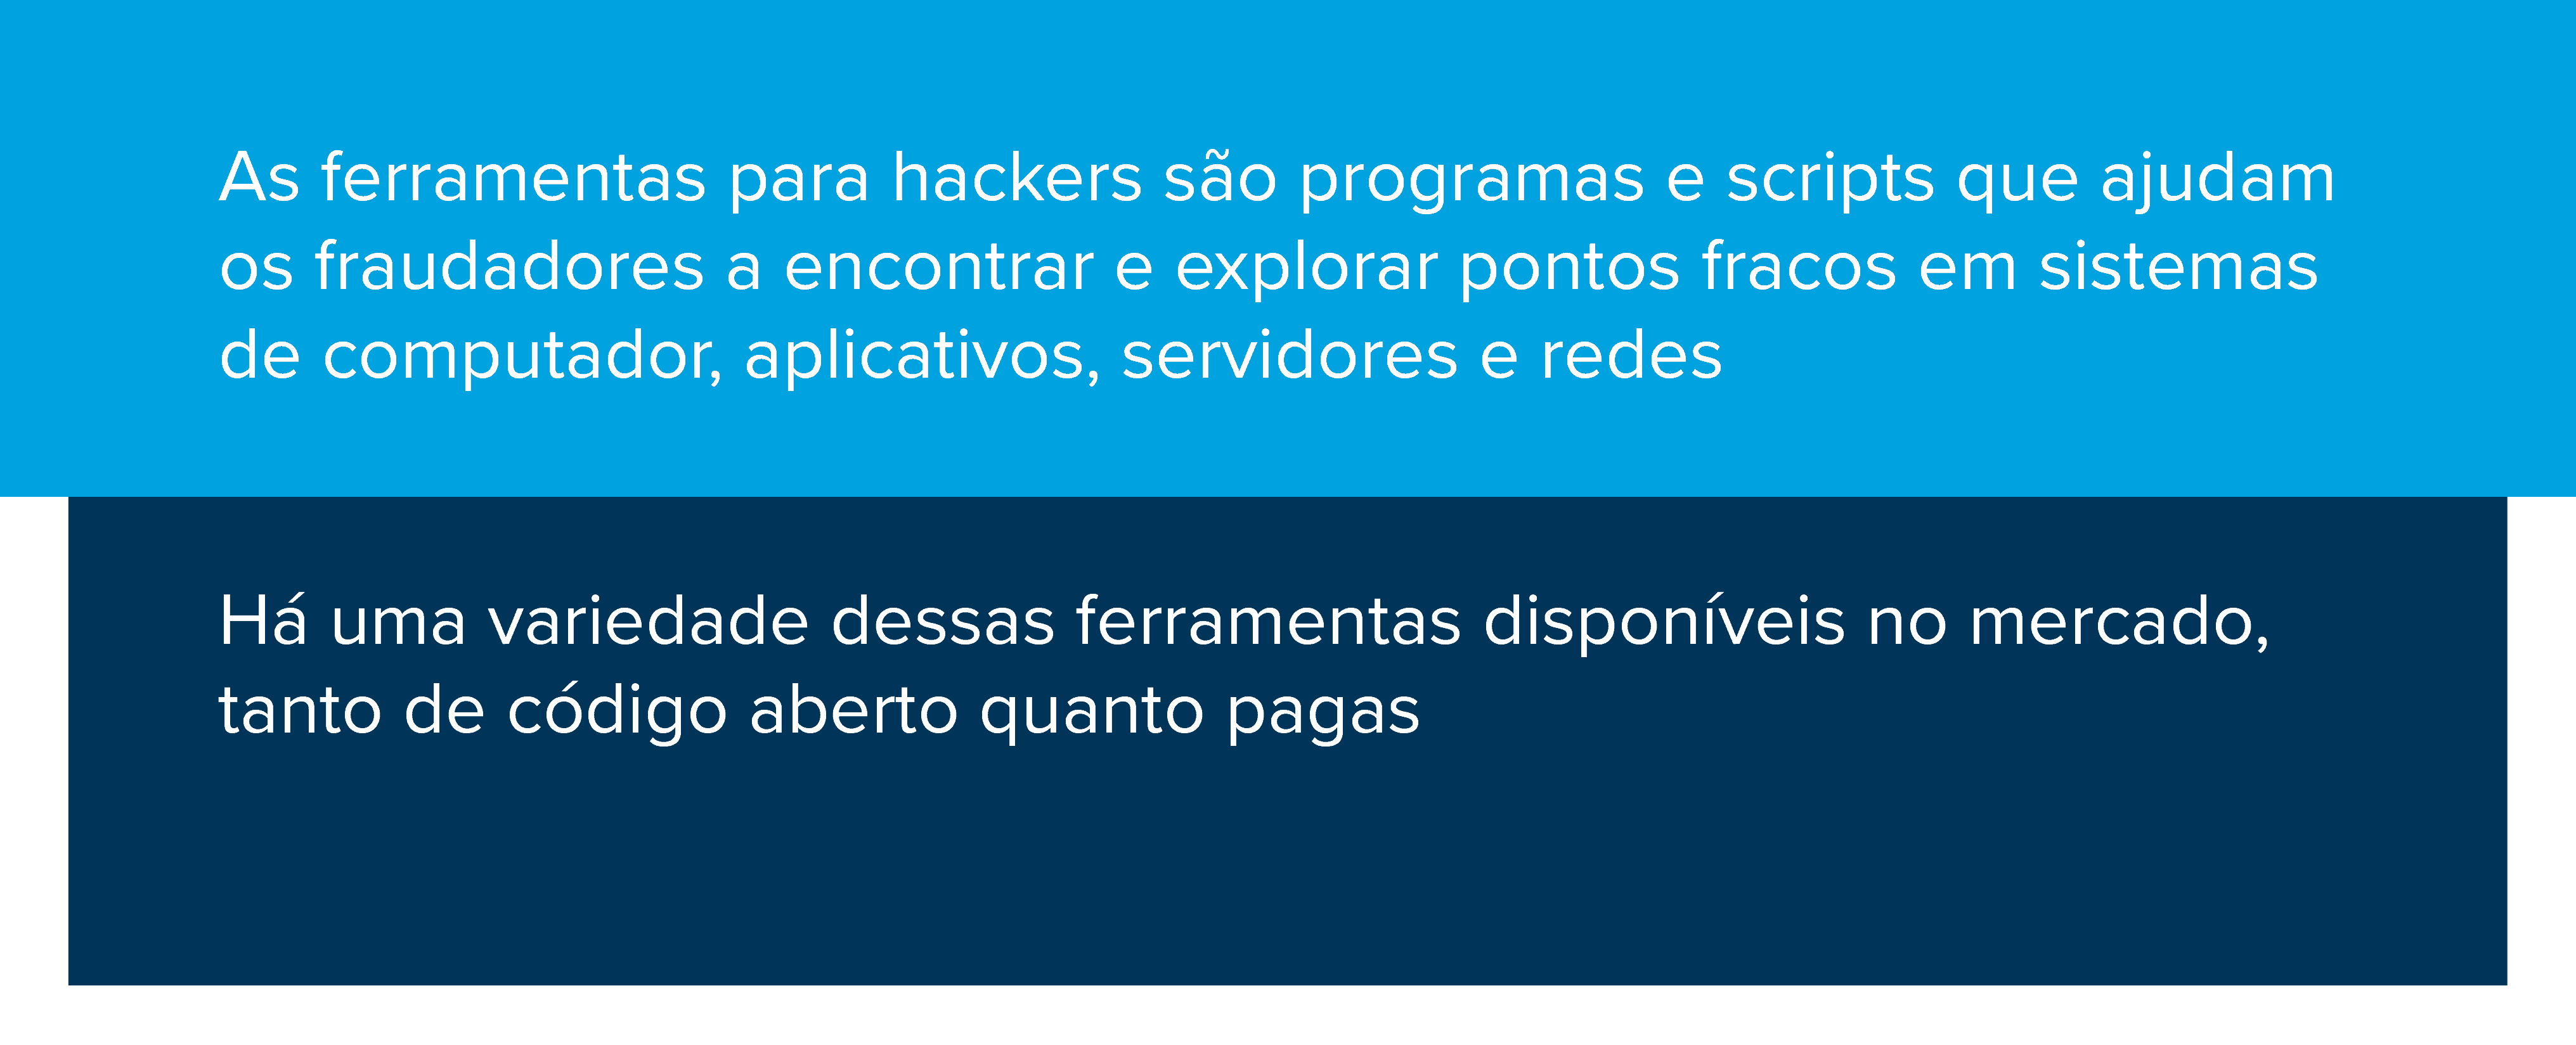 As ferramentas para hackers são programas e scripts que ajudam os fraudadores a encontrar e explorar pontos fracos em sistemas de computador, aplicativos, servidores e redes